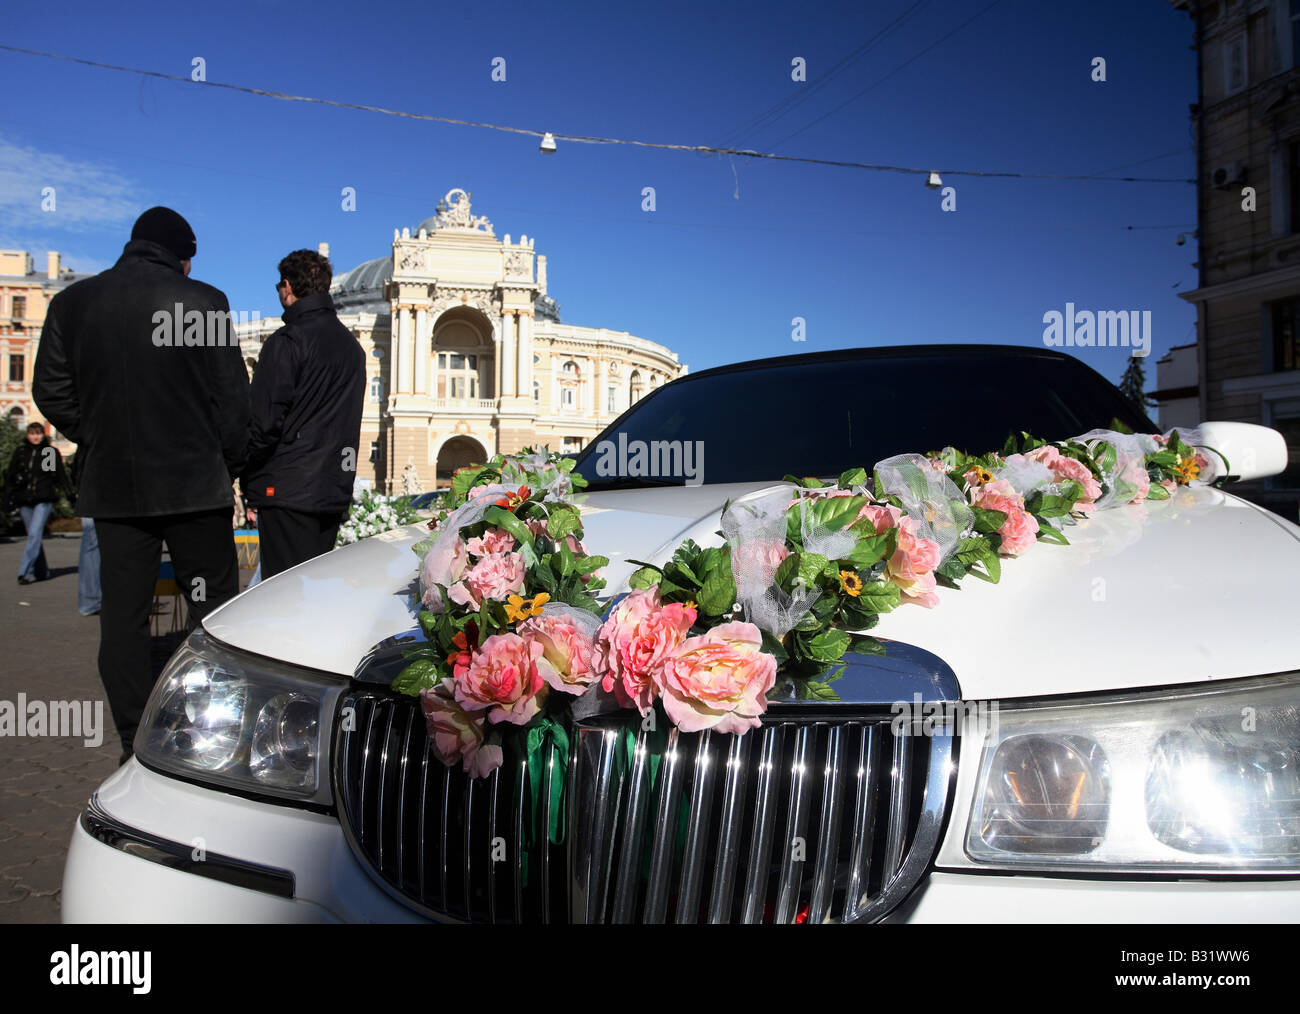 Un auto decorate con fiori per un matrimonio, Odessa, Ucraina Foto Stock